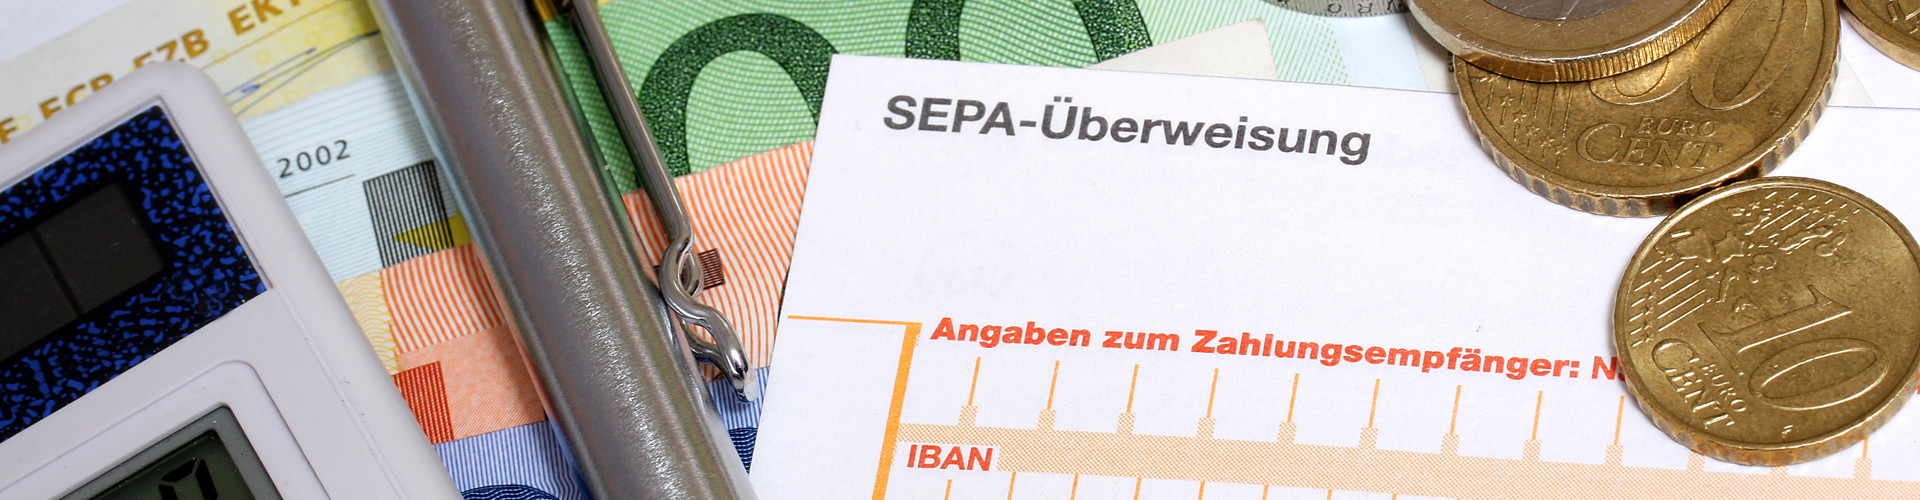 Auf mehreren Geldscheinen liegen Taschenrechner, Kugelschreiber, einige Euromünzen und ein Erlagschein. Zu erkennen ist die Aufschrift "SEPA-Überweisung".